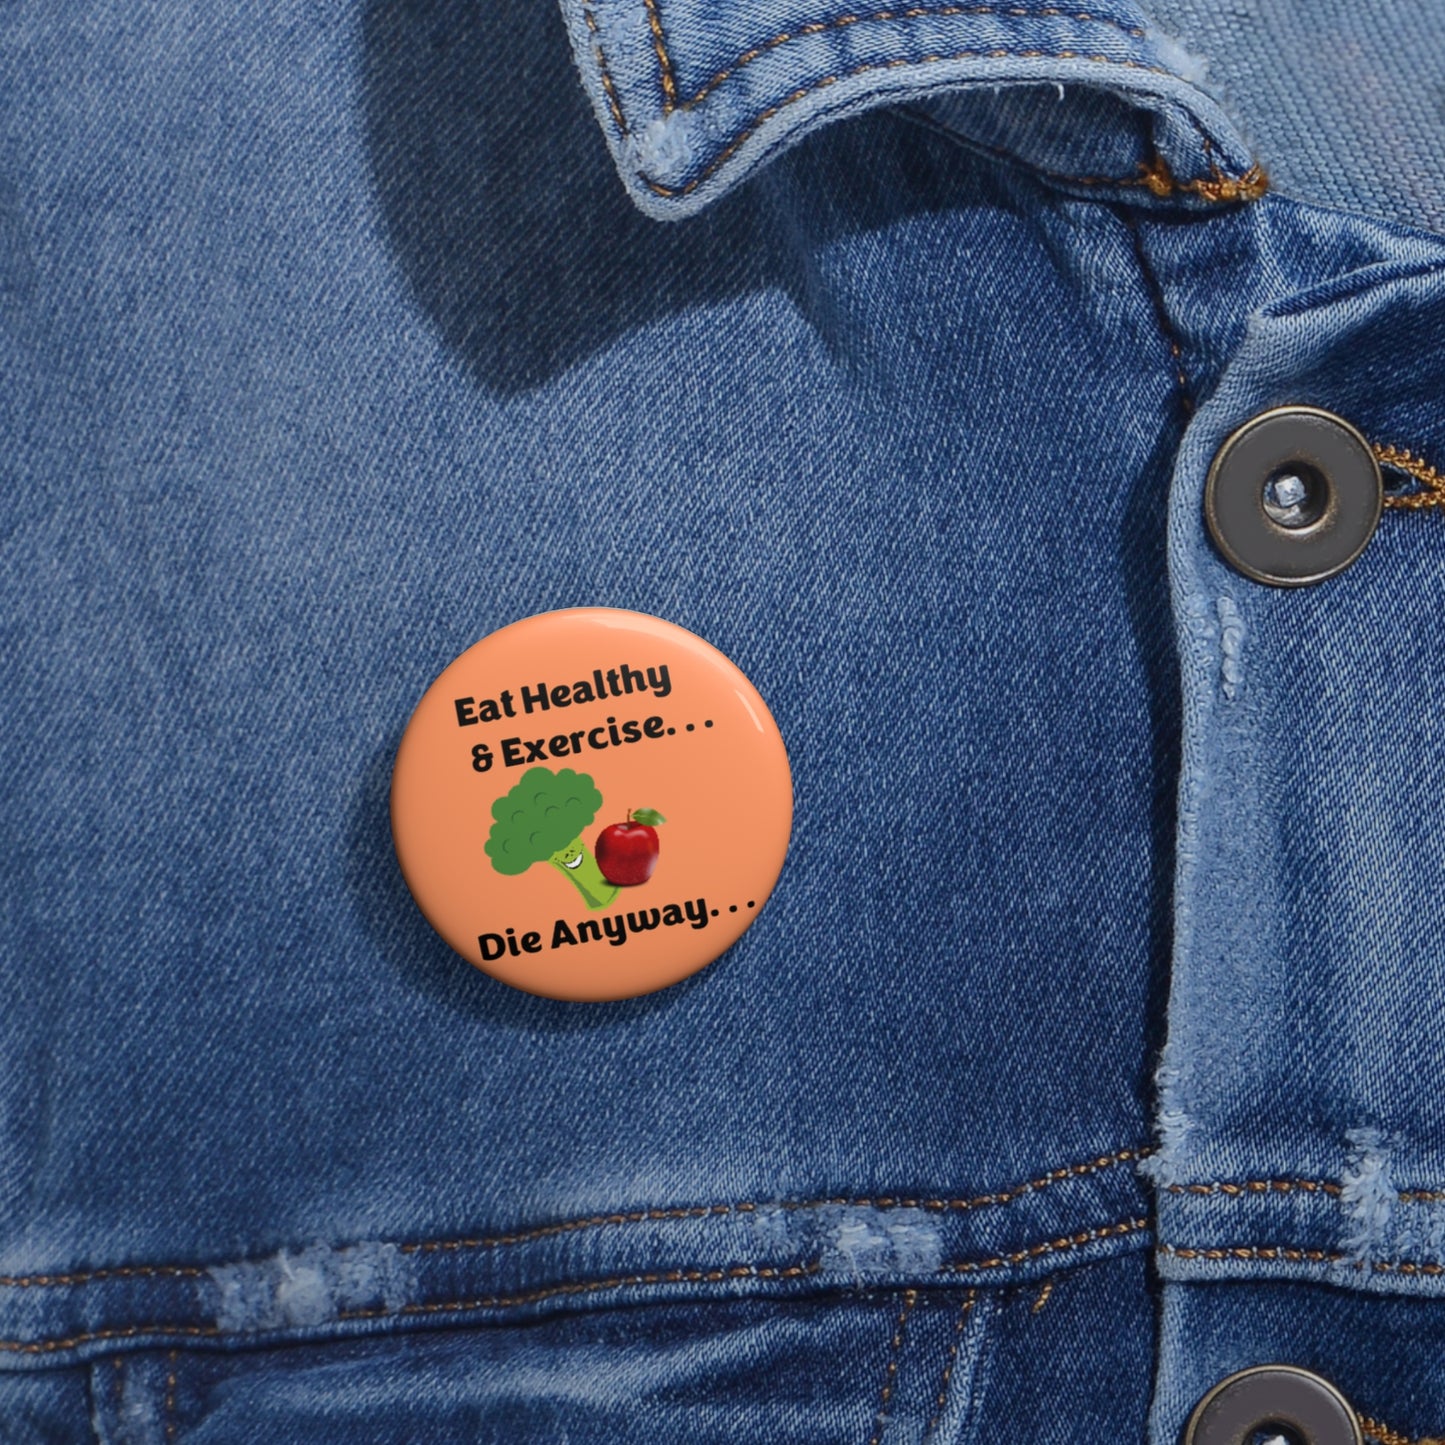 Dieta Ejercicio Muere de todos modos - Naranja - Botones de pin personalizados